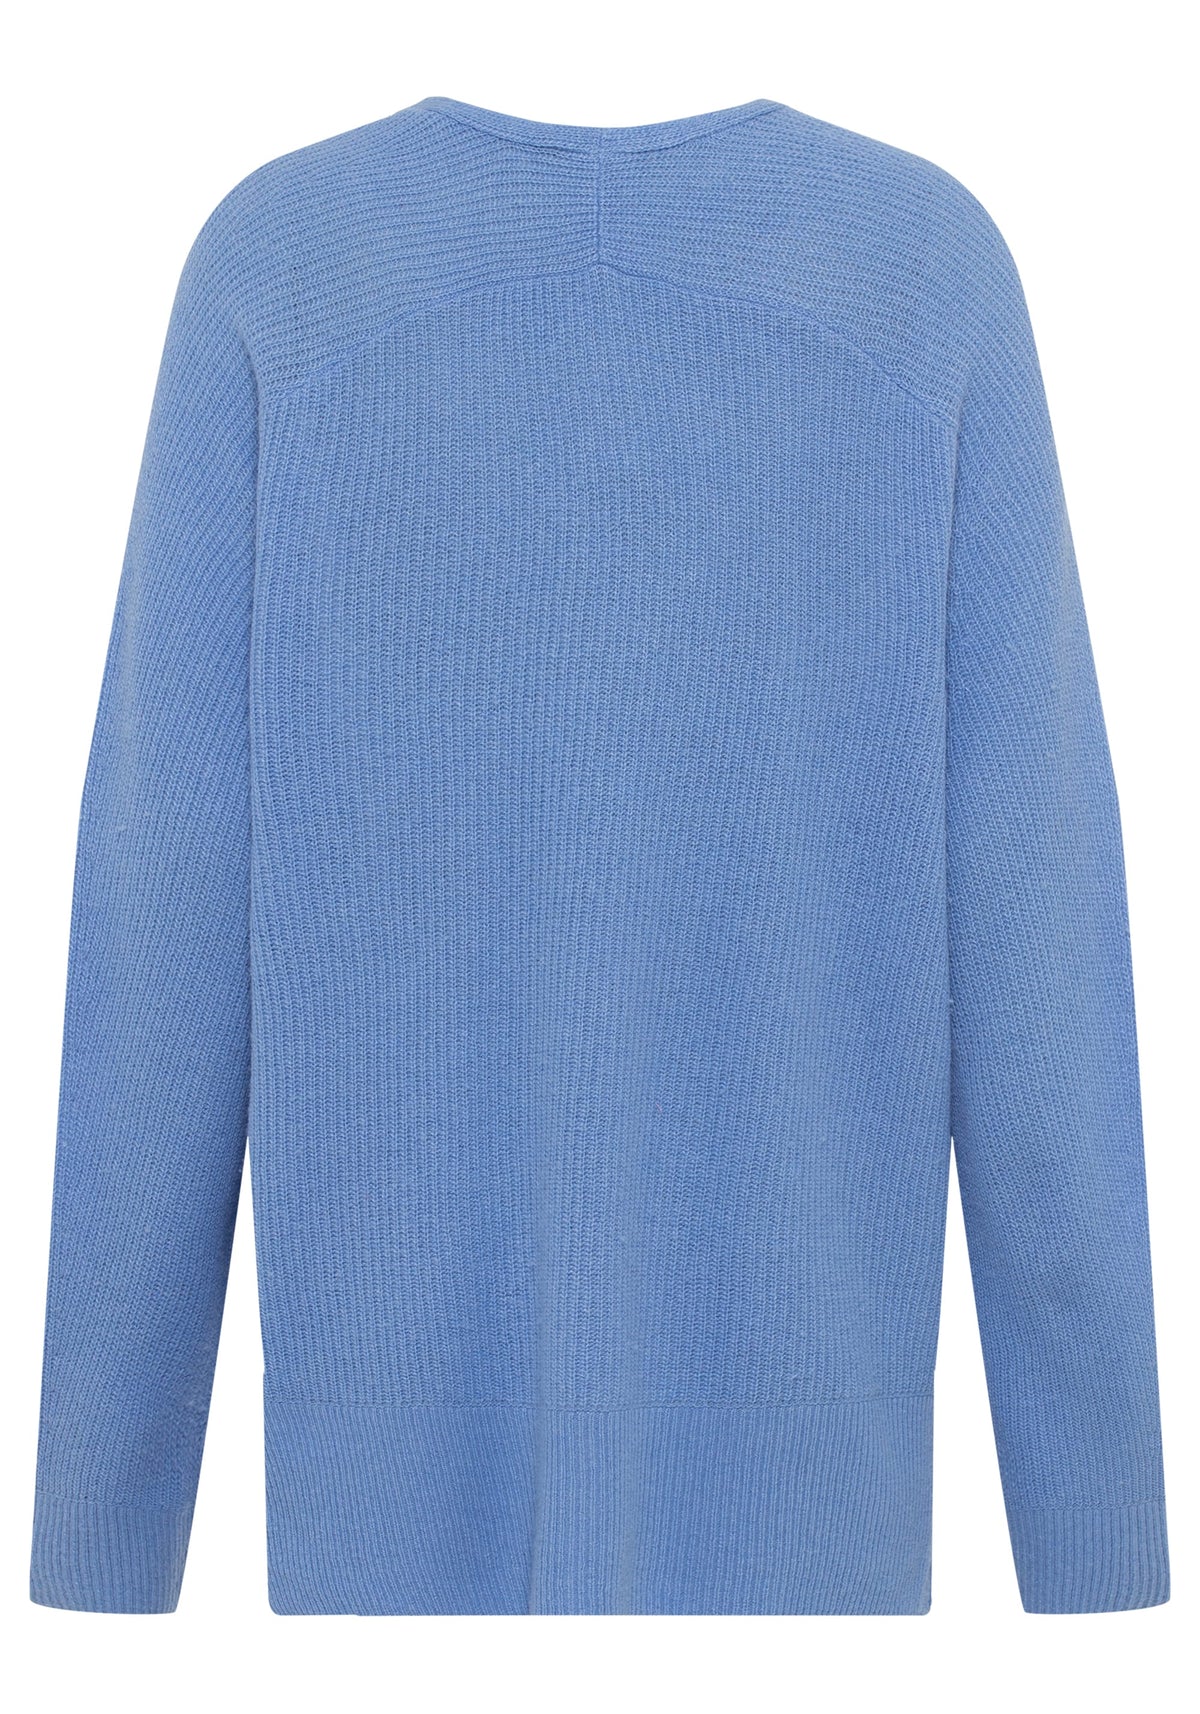 Cashmere Merino Blend Long Sleeve V-Neck Sweater